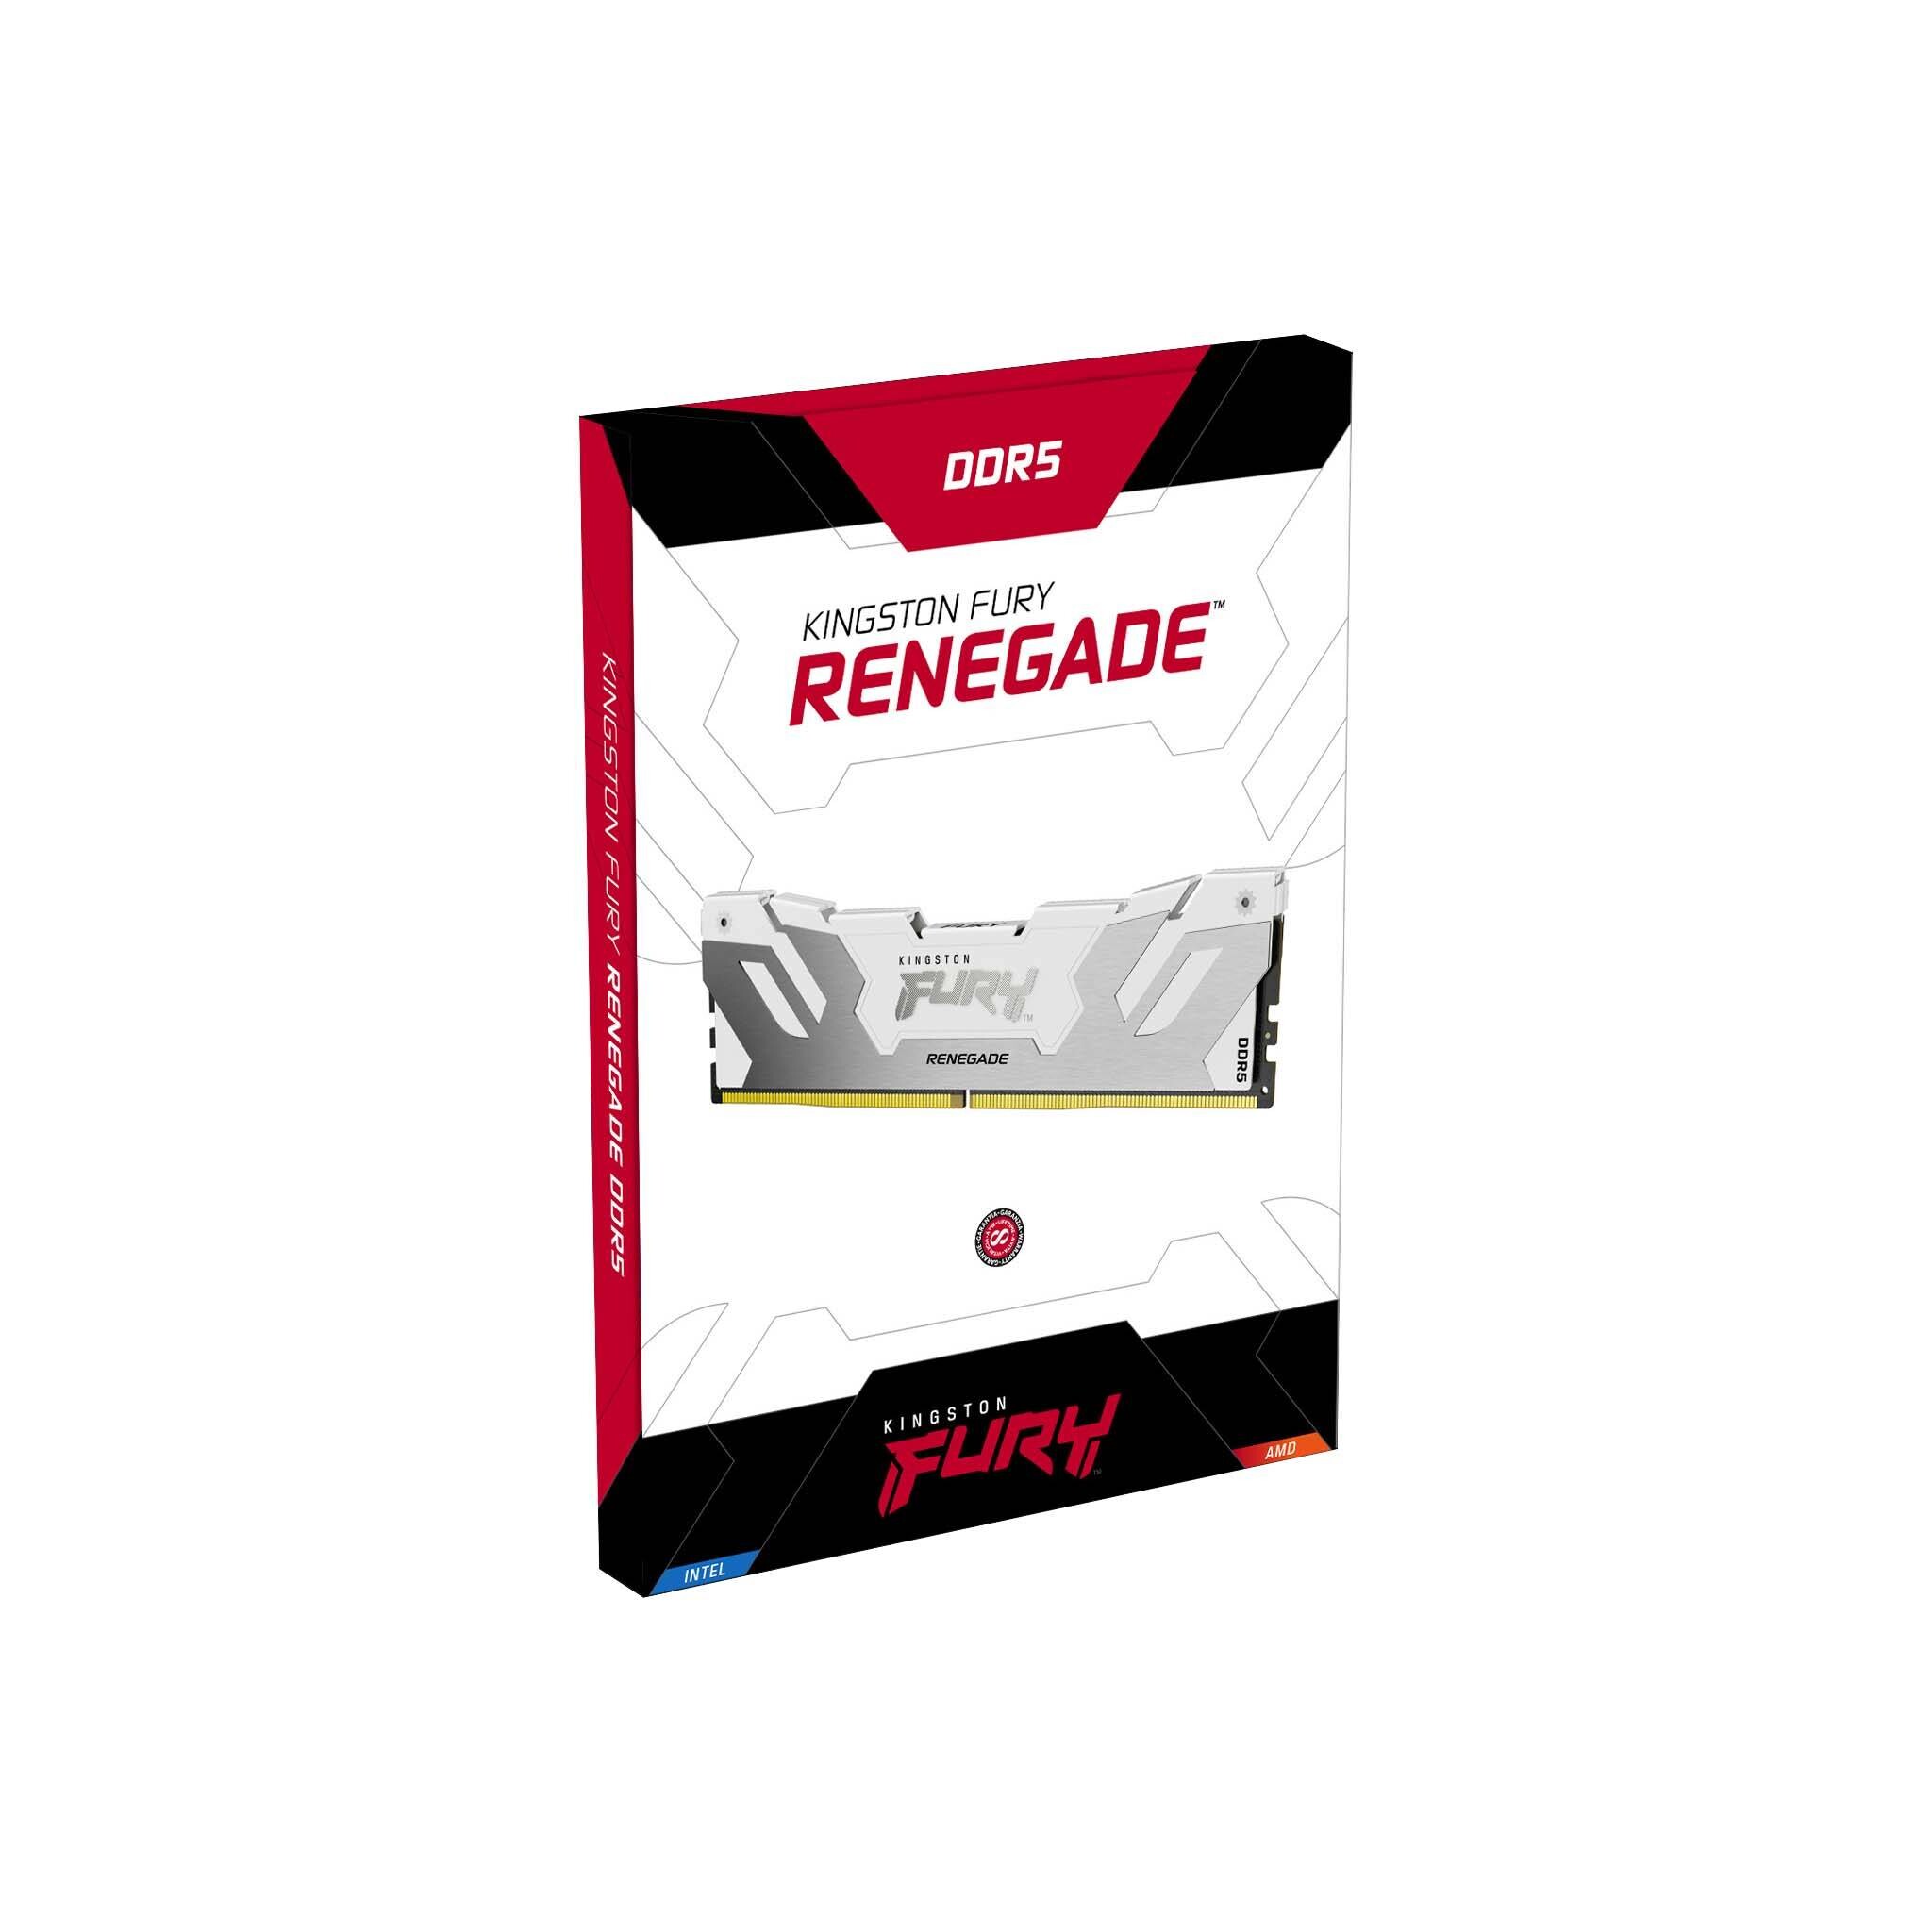 Kingston FURY Renegade DDR5 Memory Kit